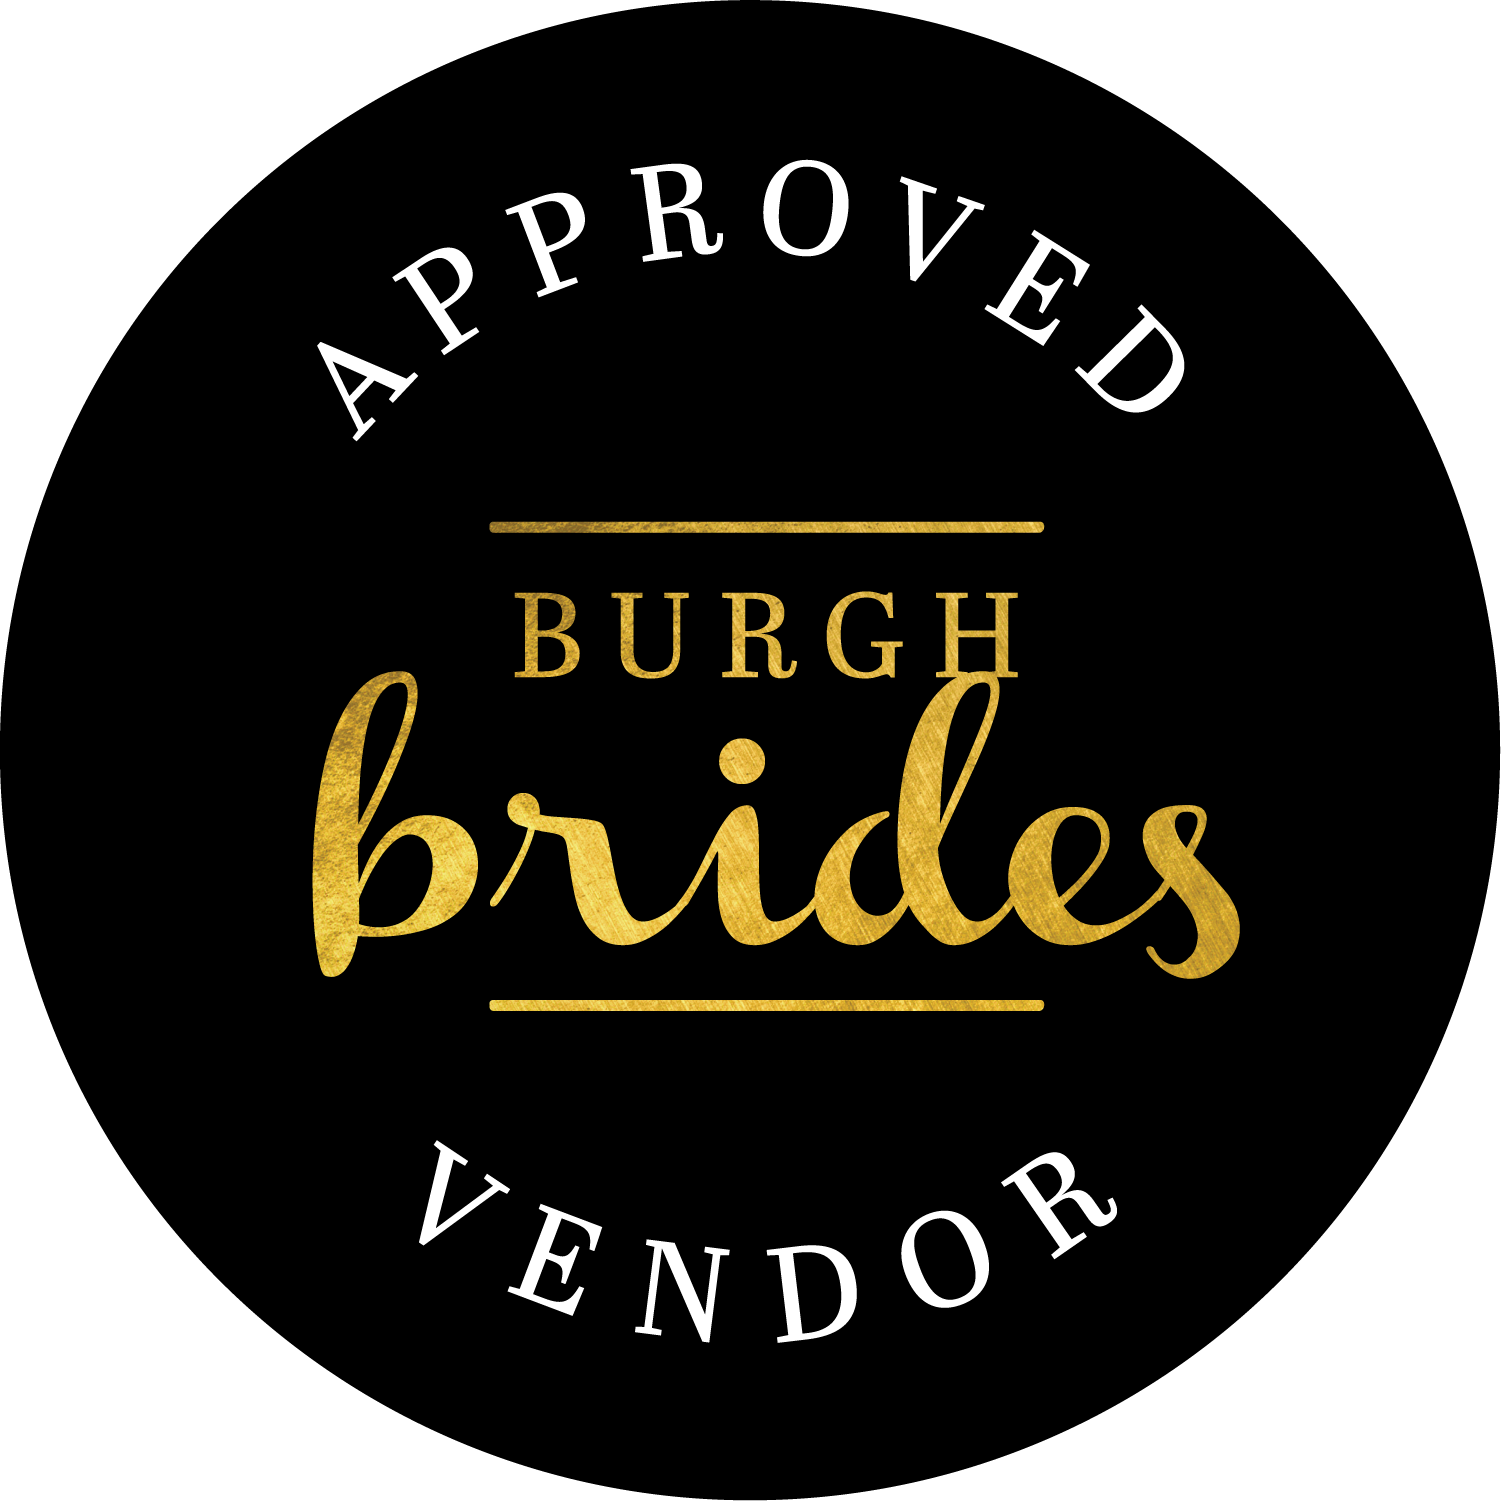 burgh-brides-approved-vendor-badge_6850ac8a-d27c-4f4a-acee-2a677fb8a7f4.png